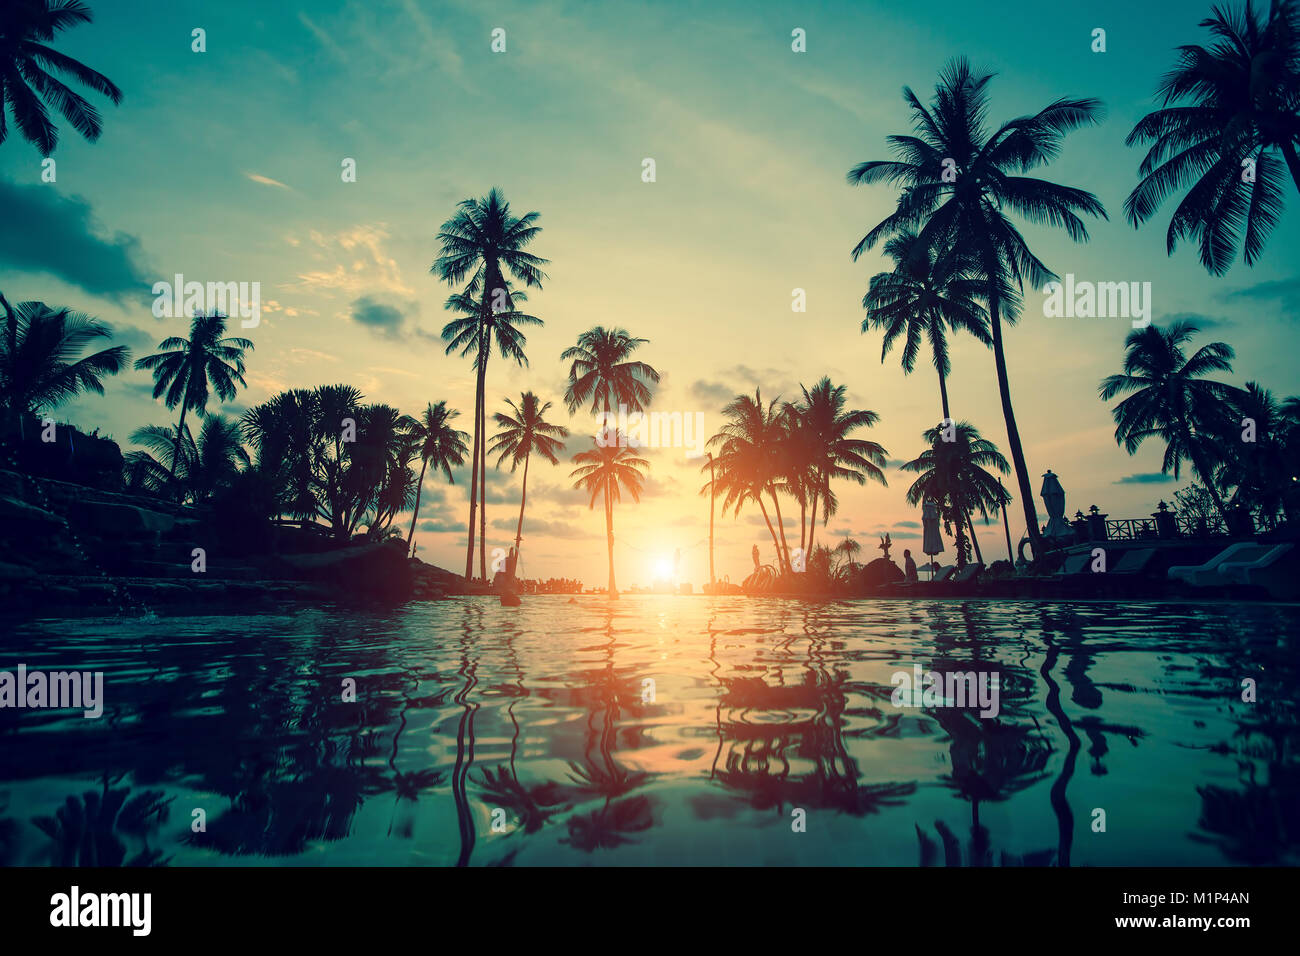 Silhouettes de palmiers au tropical coast lors d'un incroyable coucher du soleil. Banque D'Images